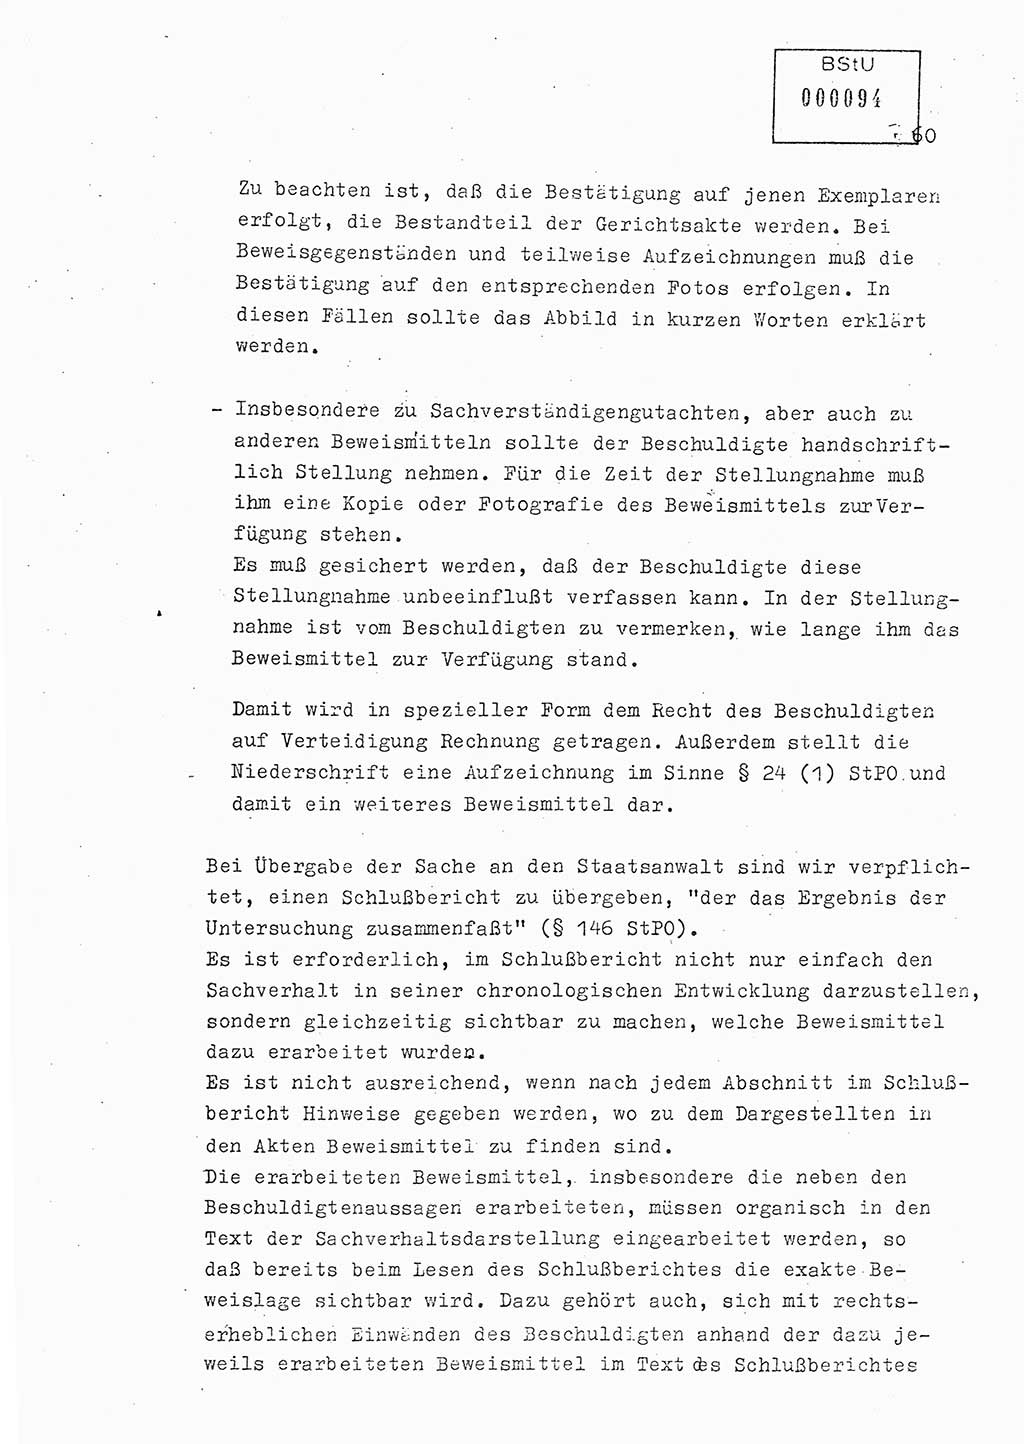 Lektion Ministerium für Staatssicherheit (MfS) [Deutsche Demokratische Republik (DDR)], Hauptabteilung (HA) Ⅸ, Berlin 1979, Seite 60 (Lekt. Bew.-Fü. EV MfS DDR HA Ⅸ 1979, S. 60)